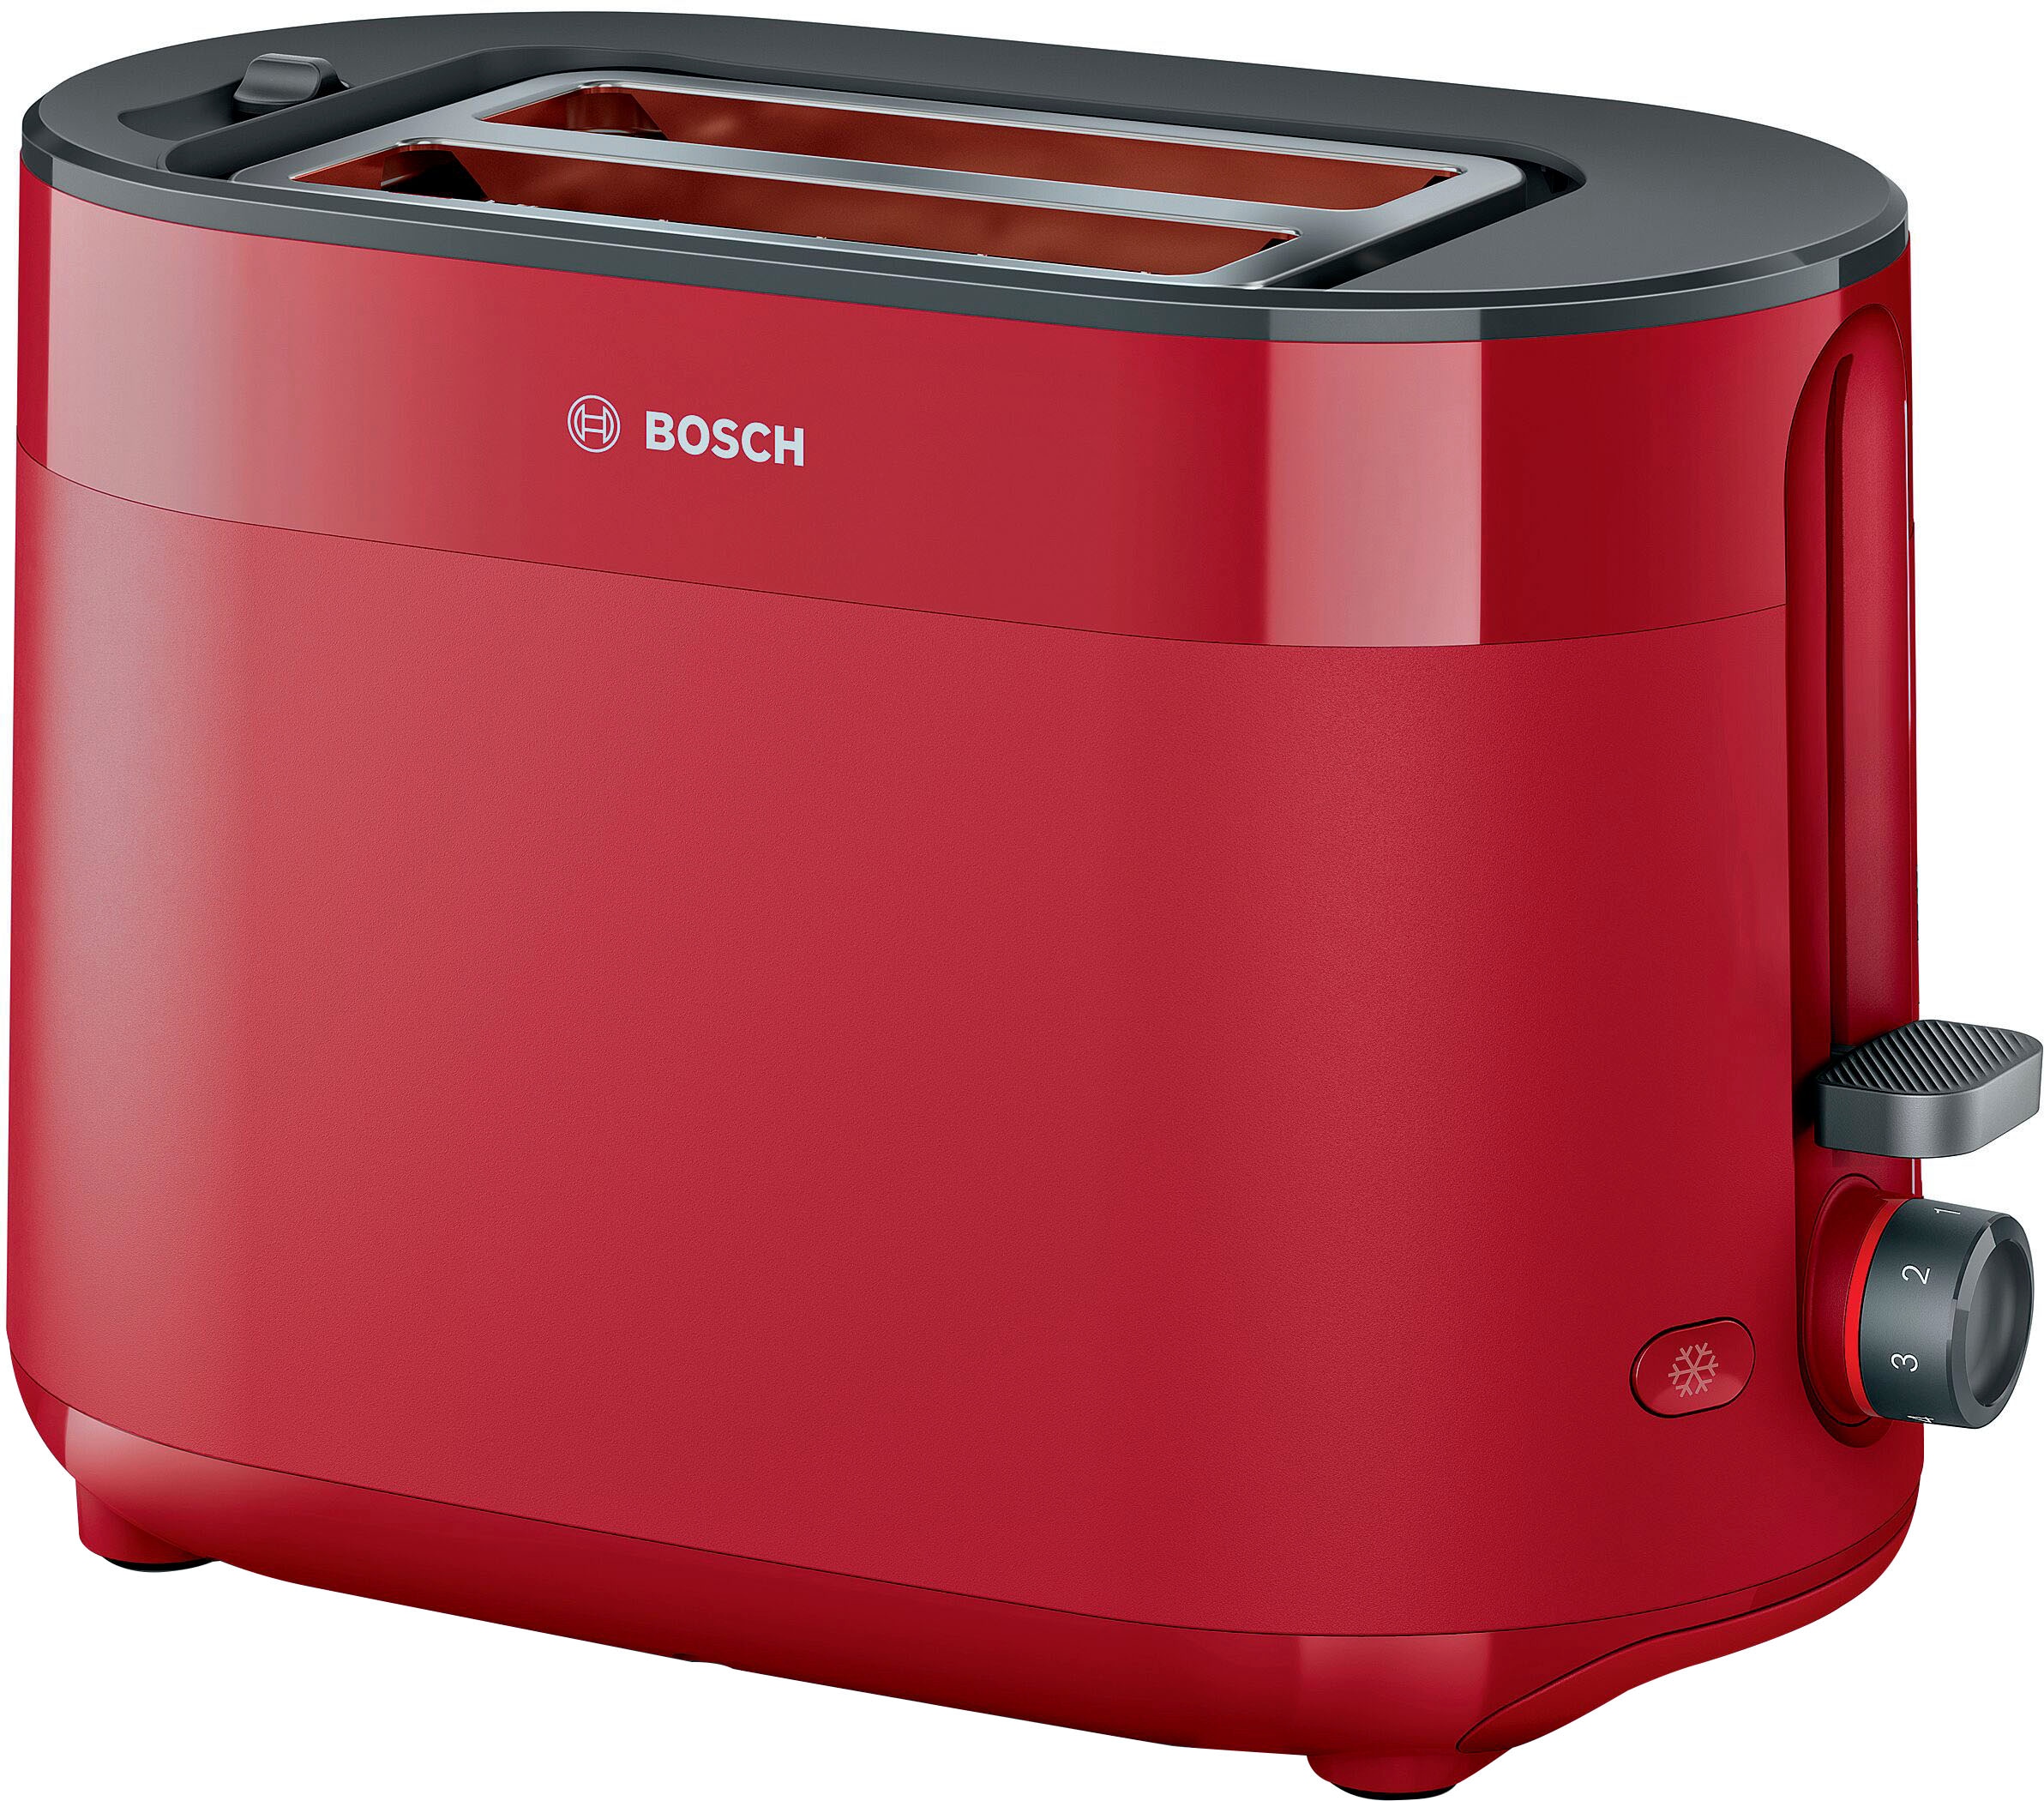 Bosch Toaster jetzt Universal. jetzt hat ☆ online kaufen Jeder sein